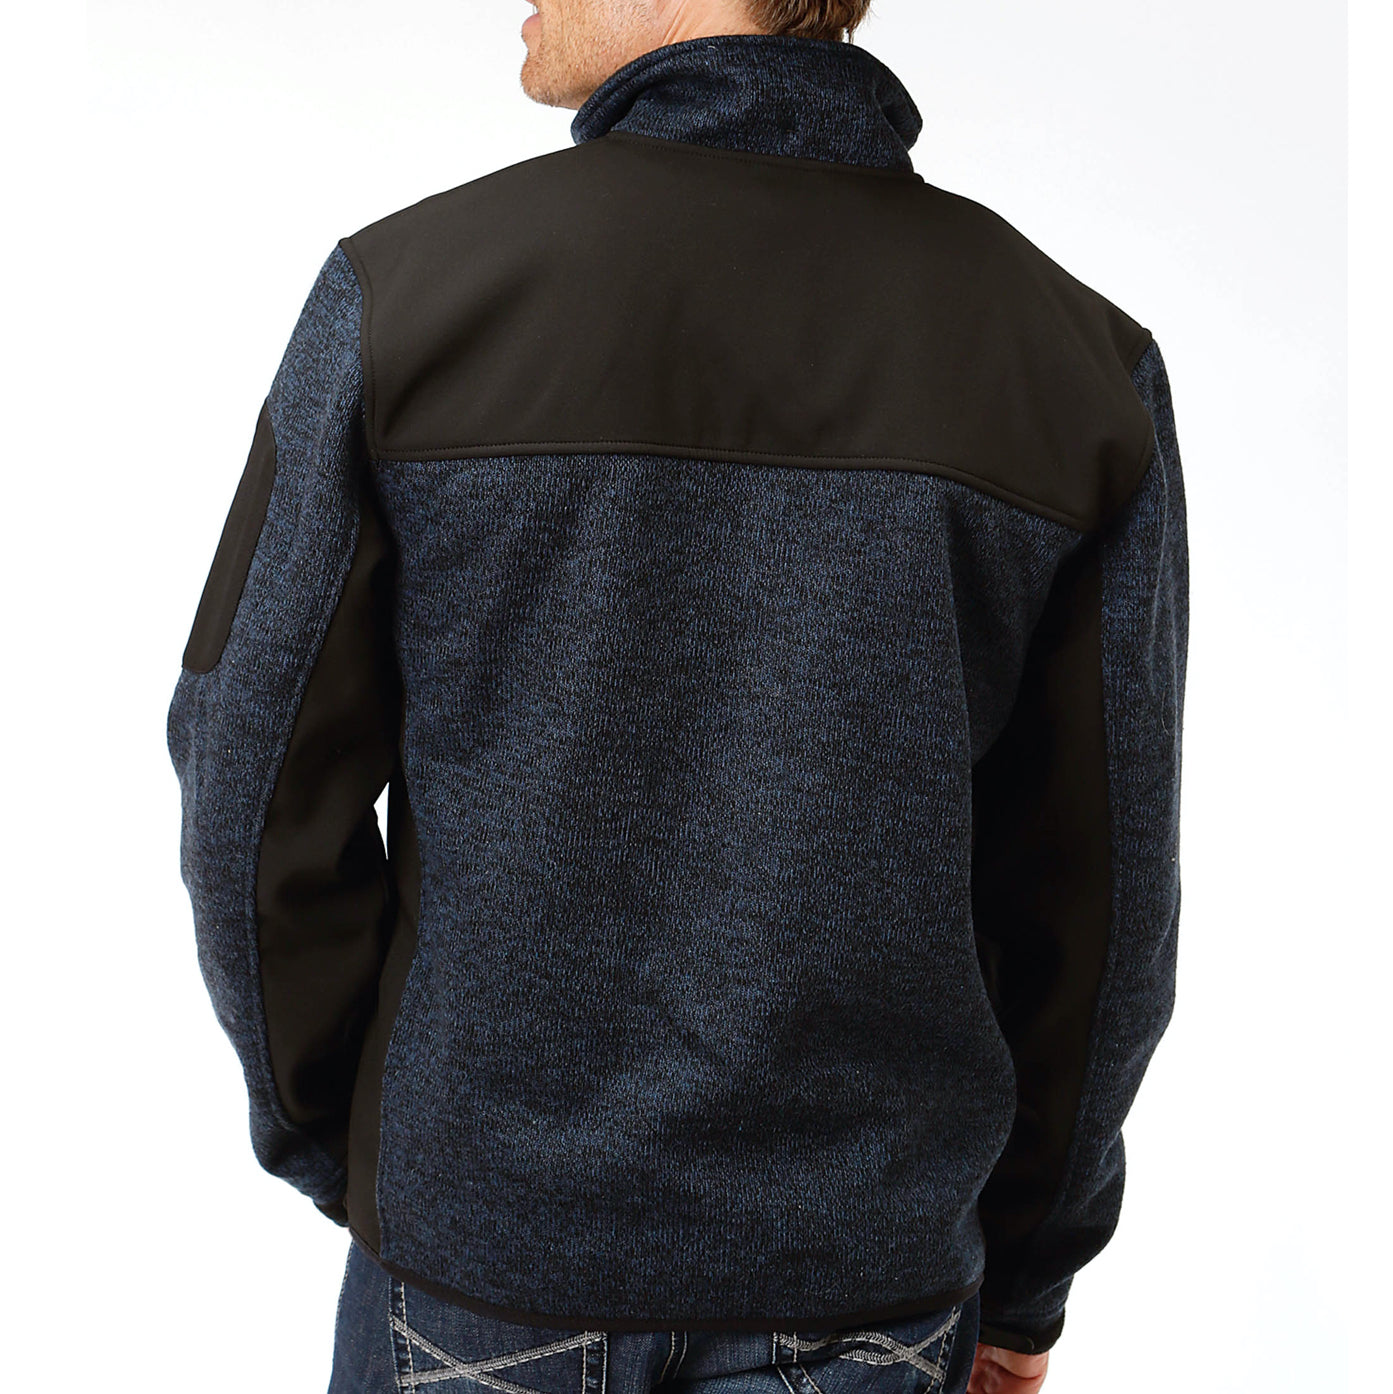 Roper Men's Blue & Black Knit Sweater Fleece Jacket 03-097-0794-7110BU